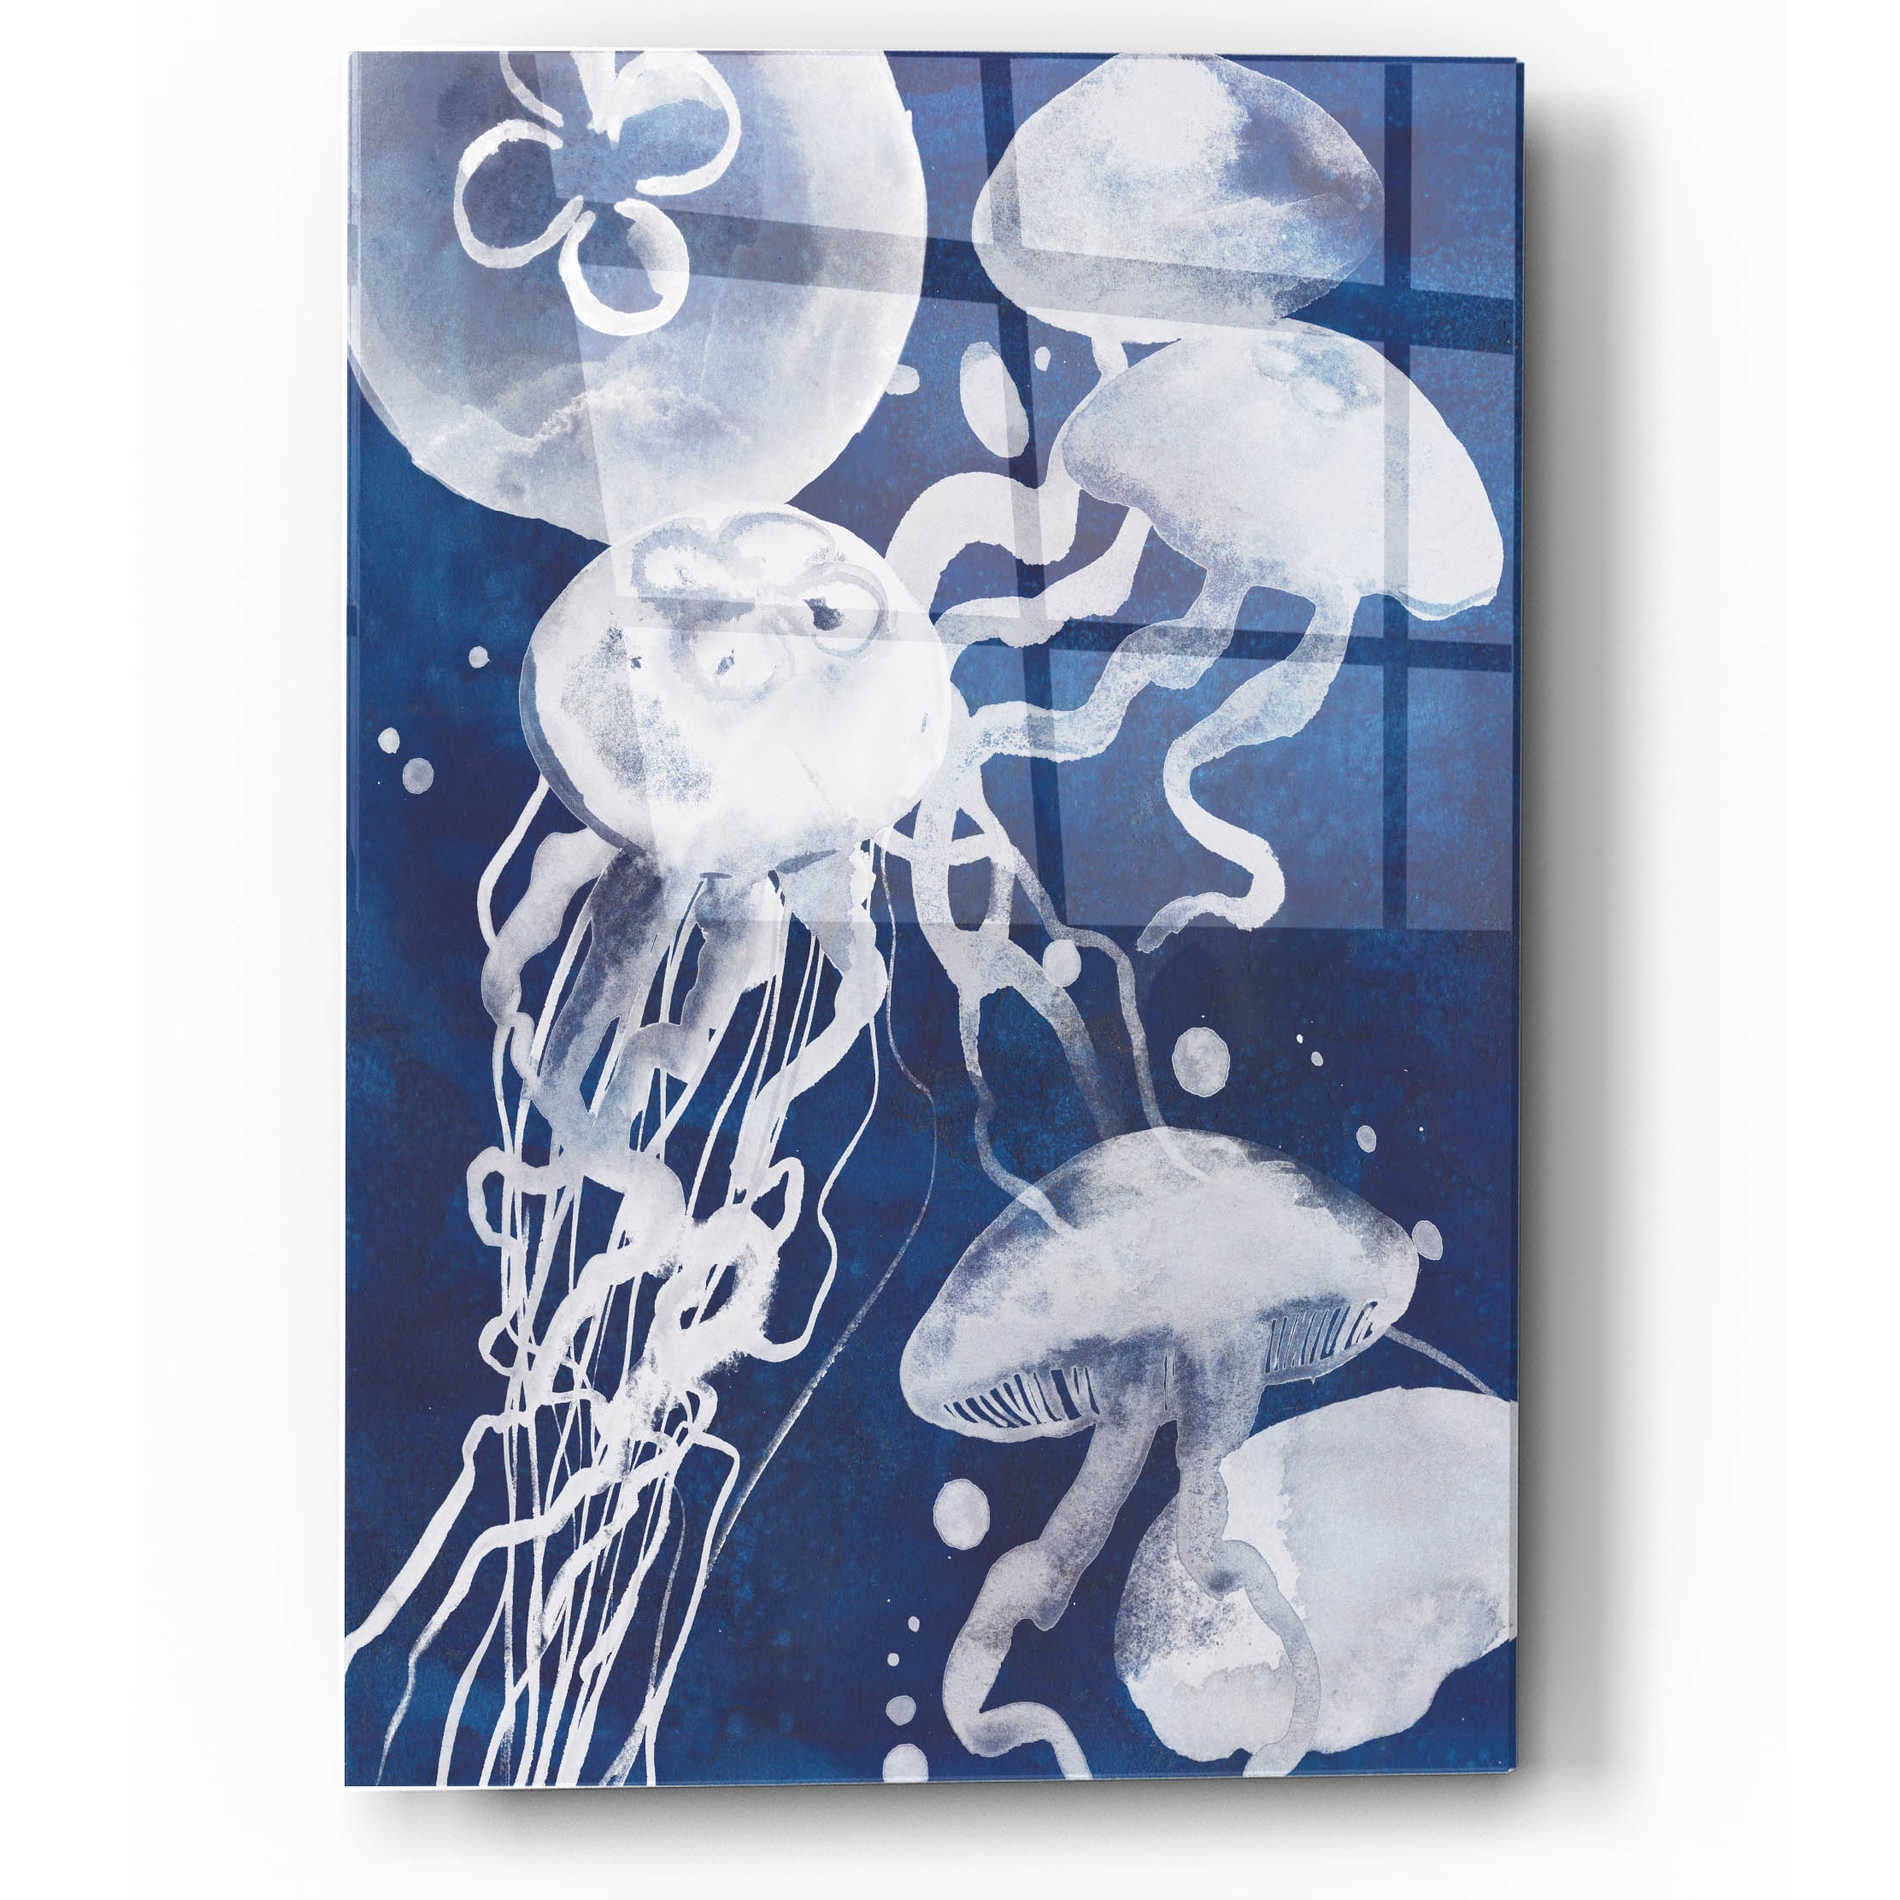 Epic Art 'Swarm I' by Grace Popp, Acrylic Wall Glass,12x16